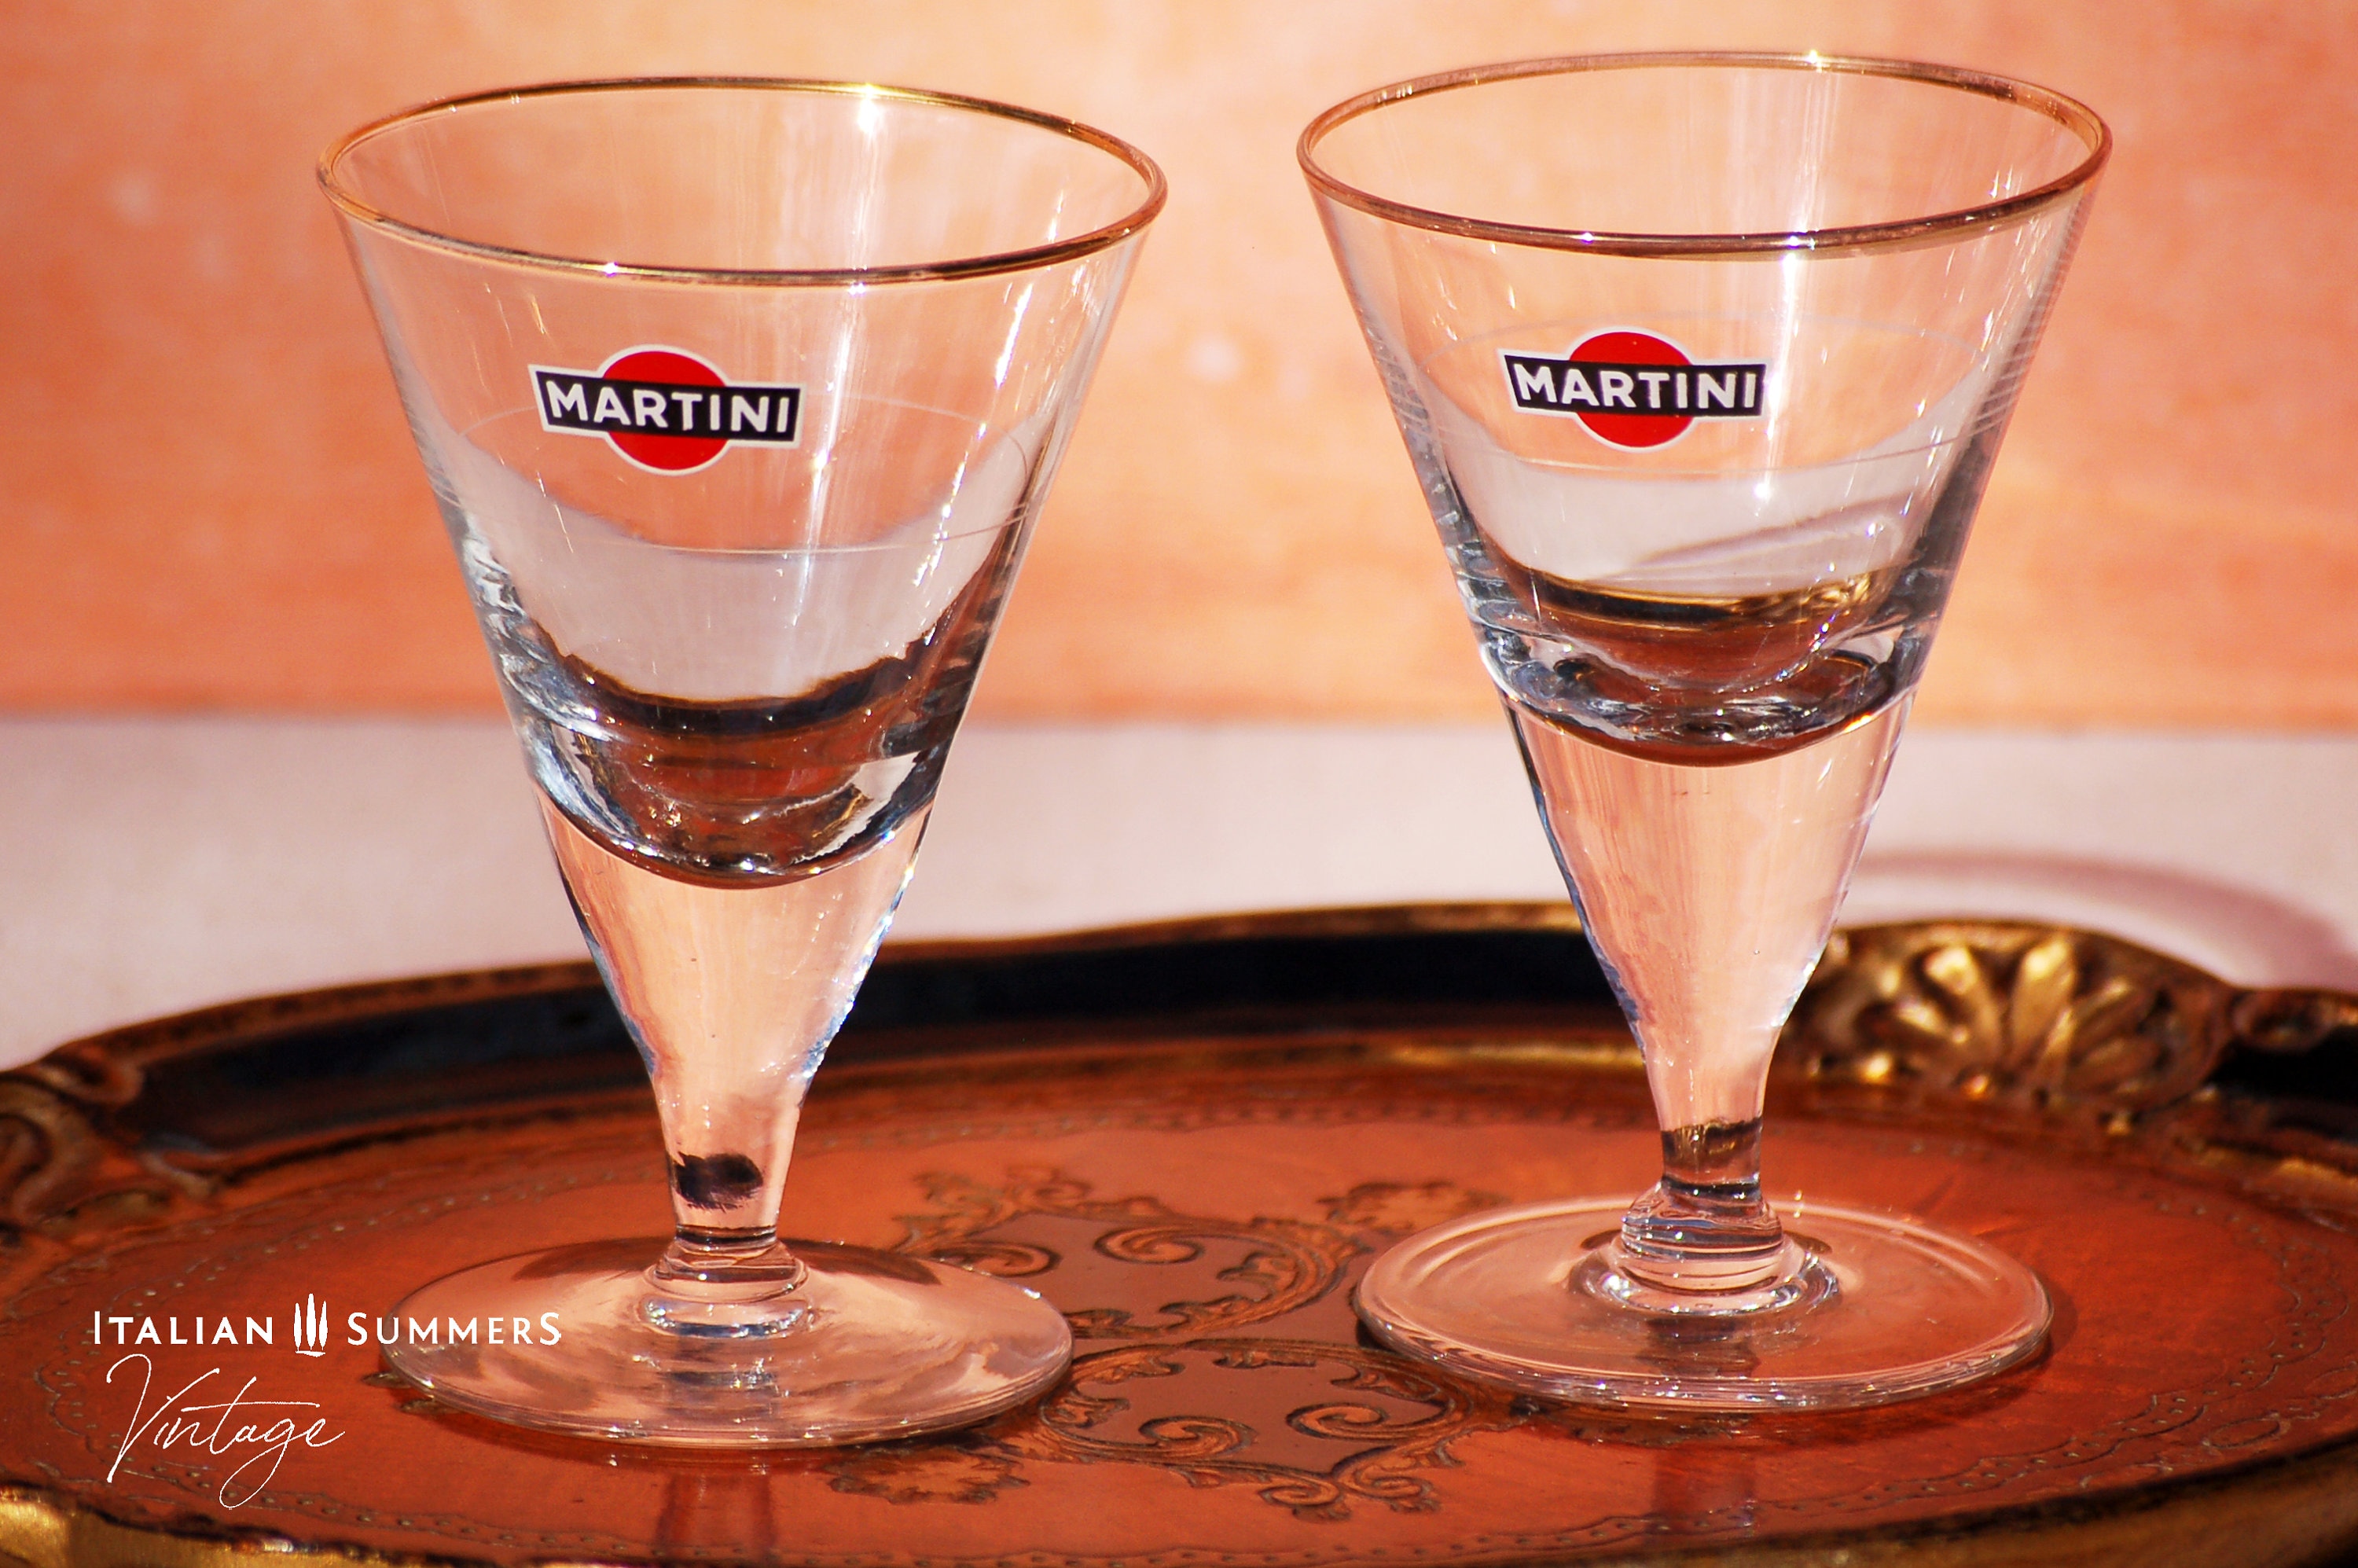 Aperitivo Triangular Martini Glass  Unique wine glasses, Glass, Unique  martini glasses